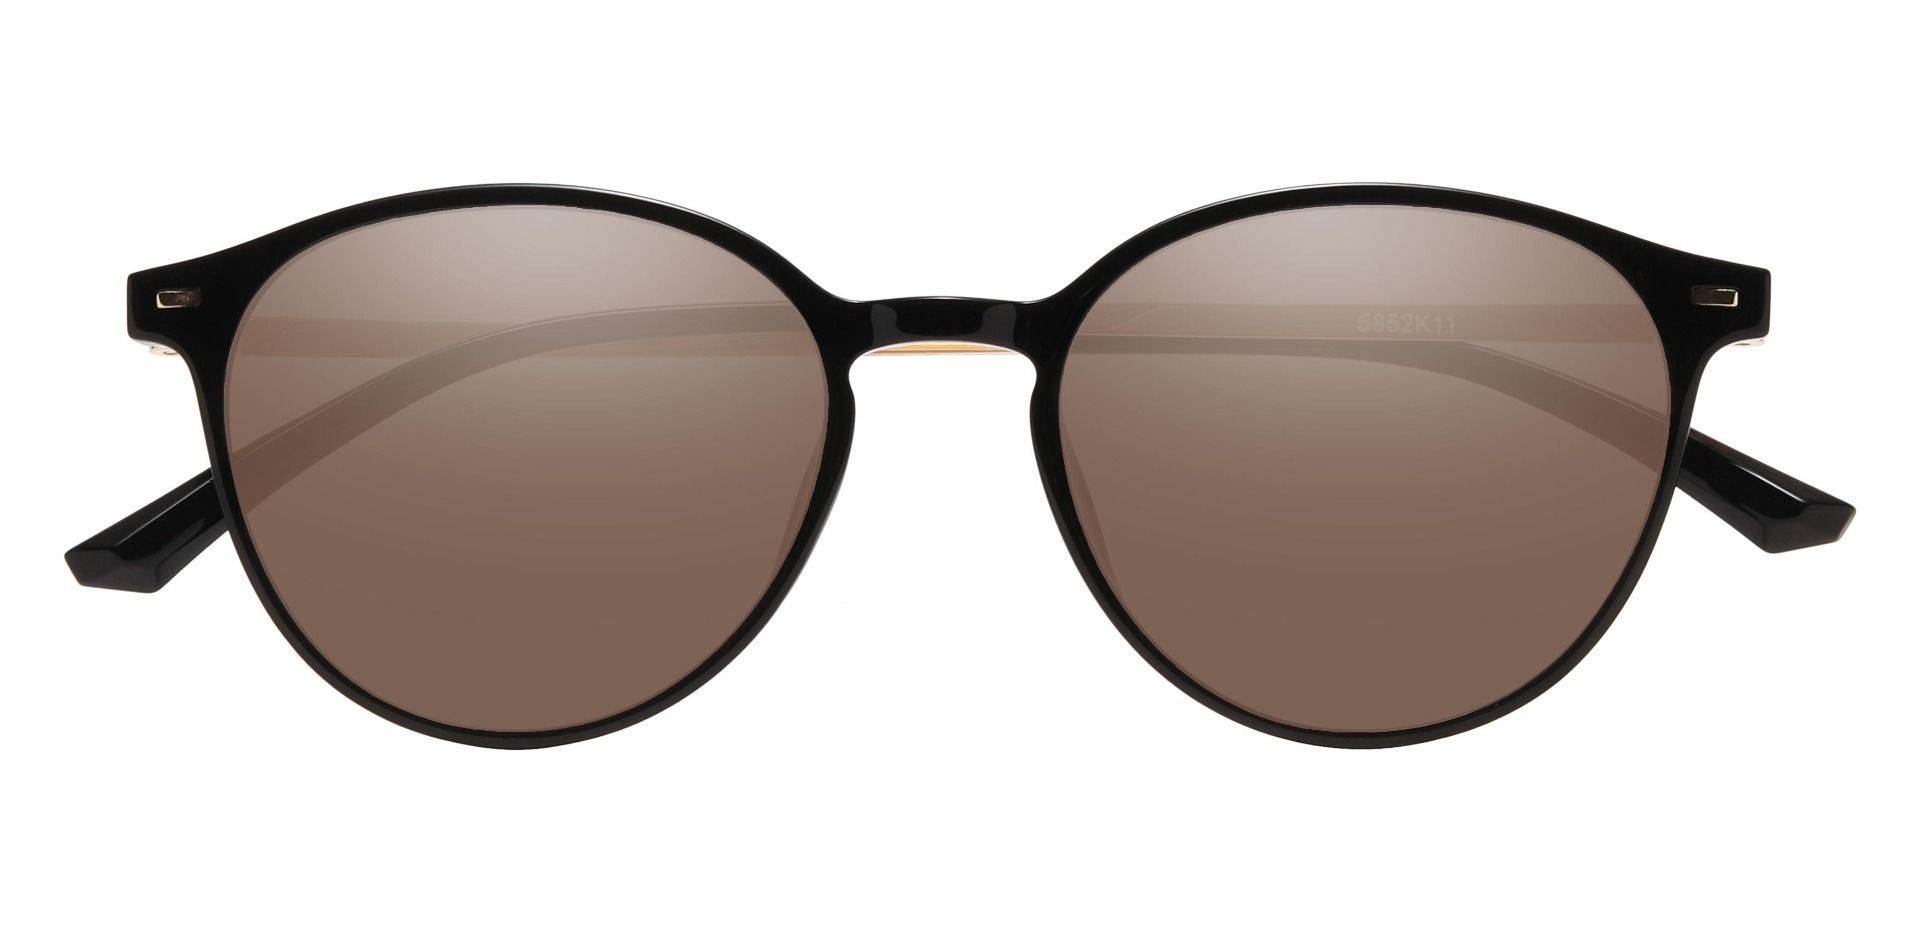 Springer Round Reading Sunglasses - Black Frame With Brown Lenses